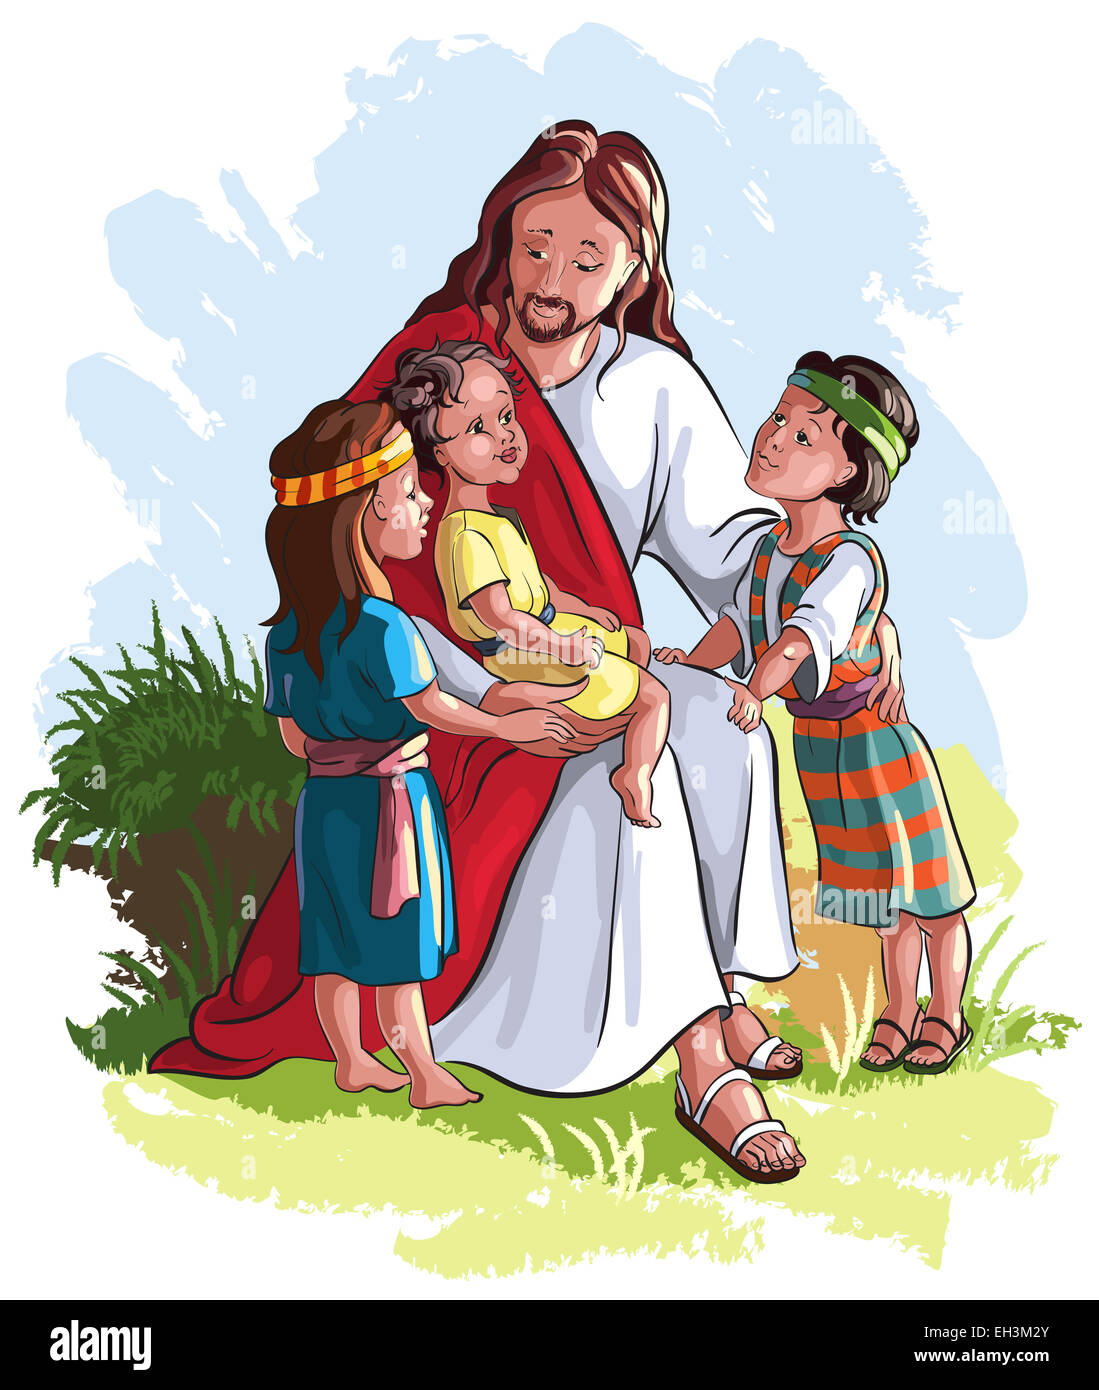 Jésus avec les enfants. Cartoon illustration couleur chrétienne des événements dans la vie de Jésus Banque D'Images